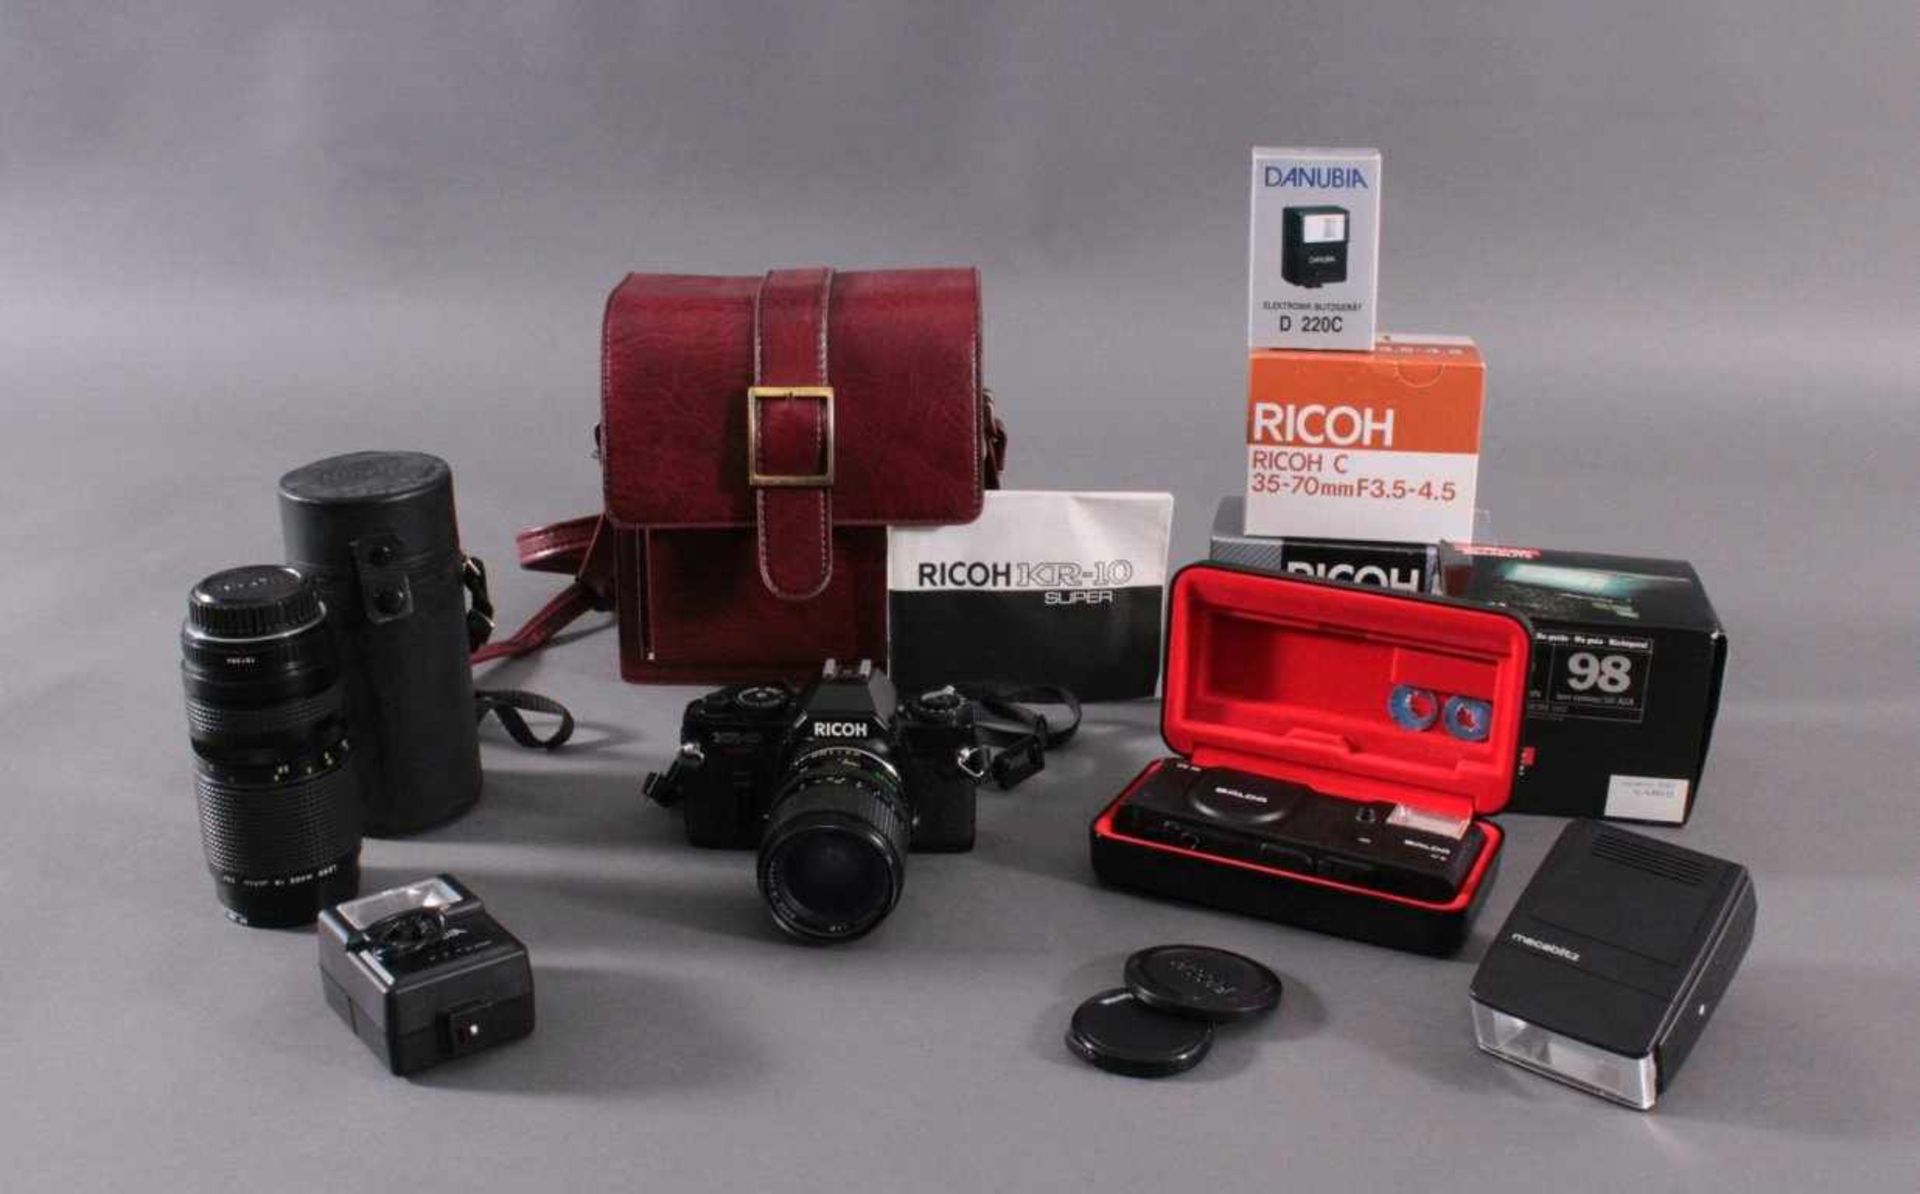 Richo XR-10 Fotoaparat mit Zubehör und Ledertsche1 Objektiv Richo C 1:3.5-4.5, 35-70 mm, Macro D- - Image 2 of 2